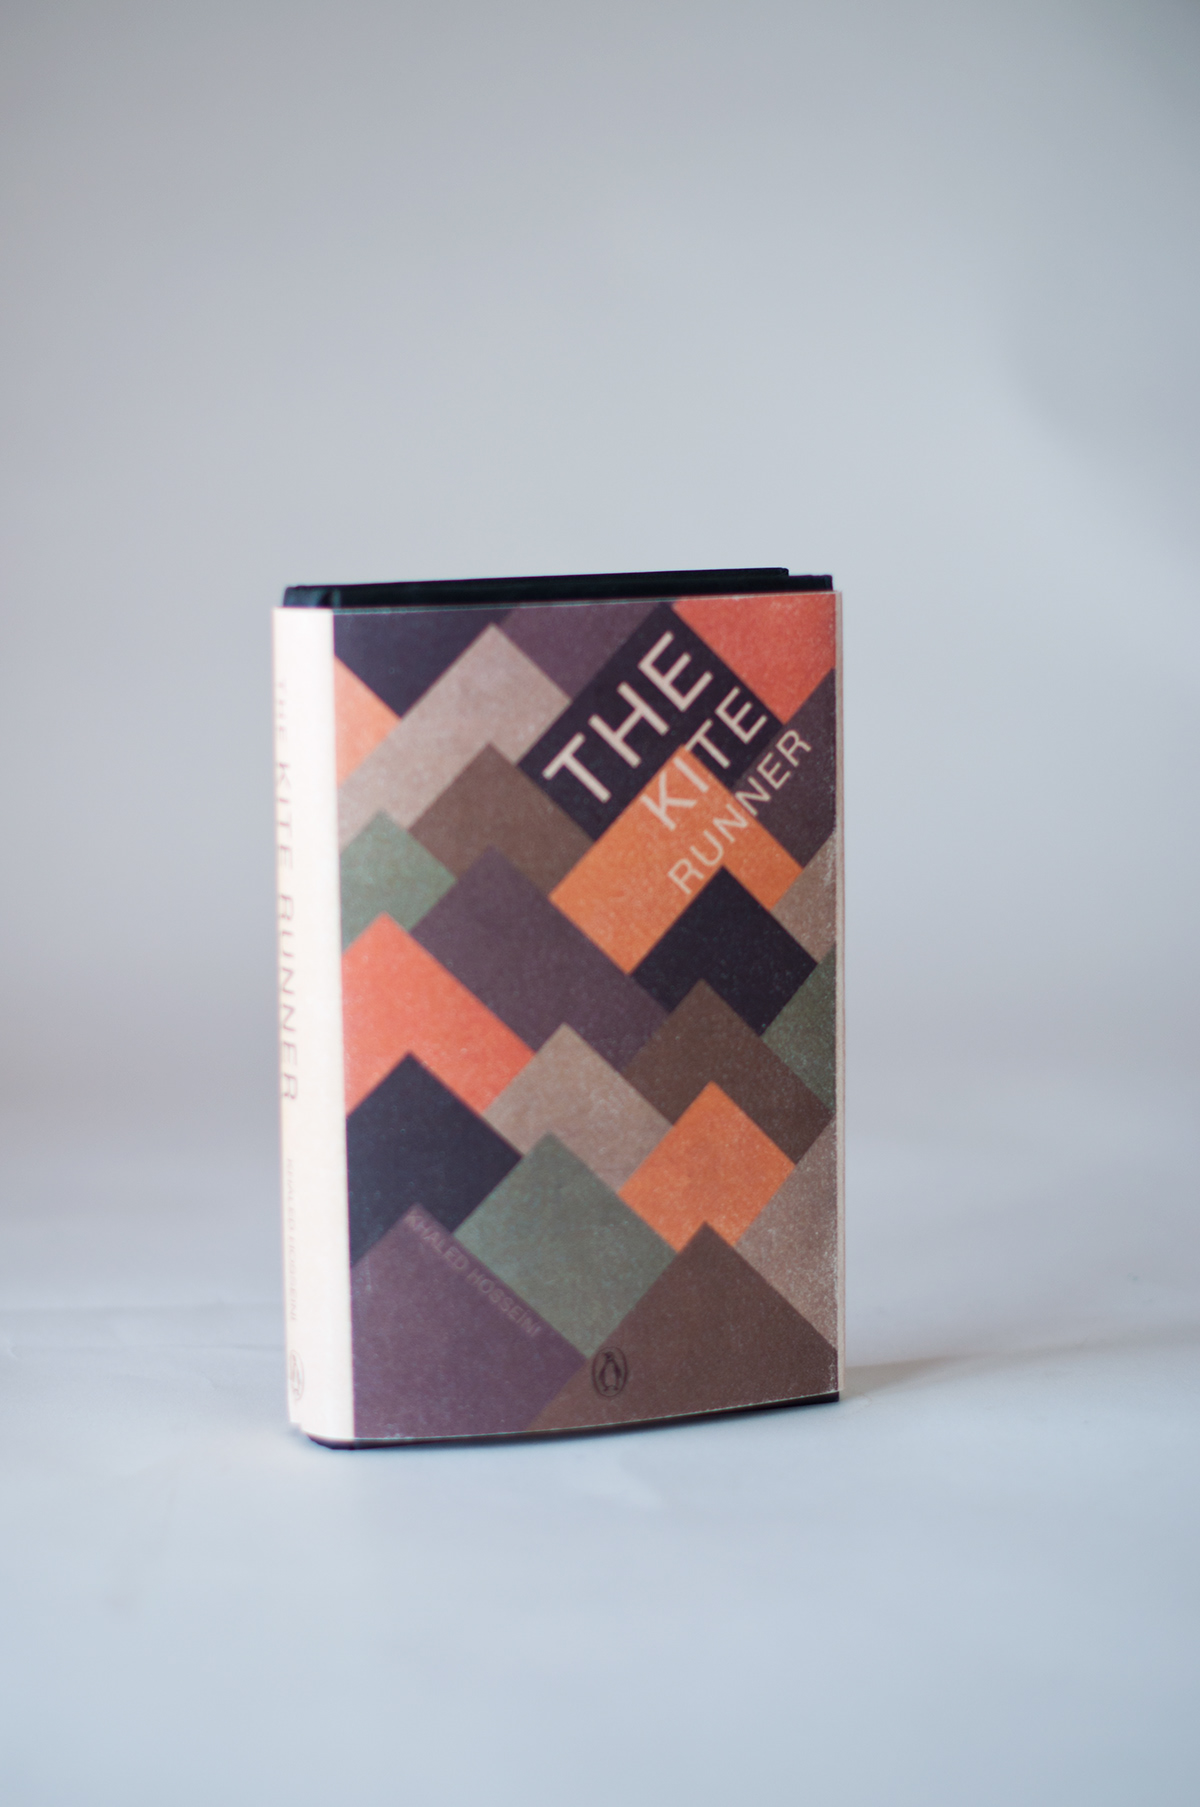 thekiterunner drageløperen graphicdesign graphicdesigner bookcover cover bookcoverdesign design